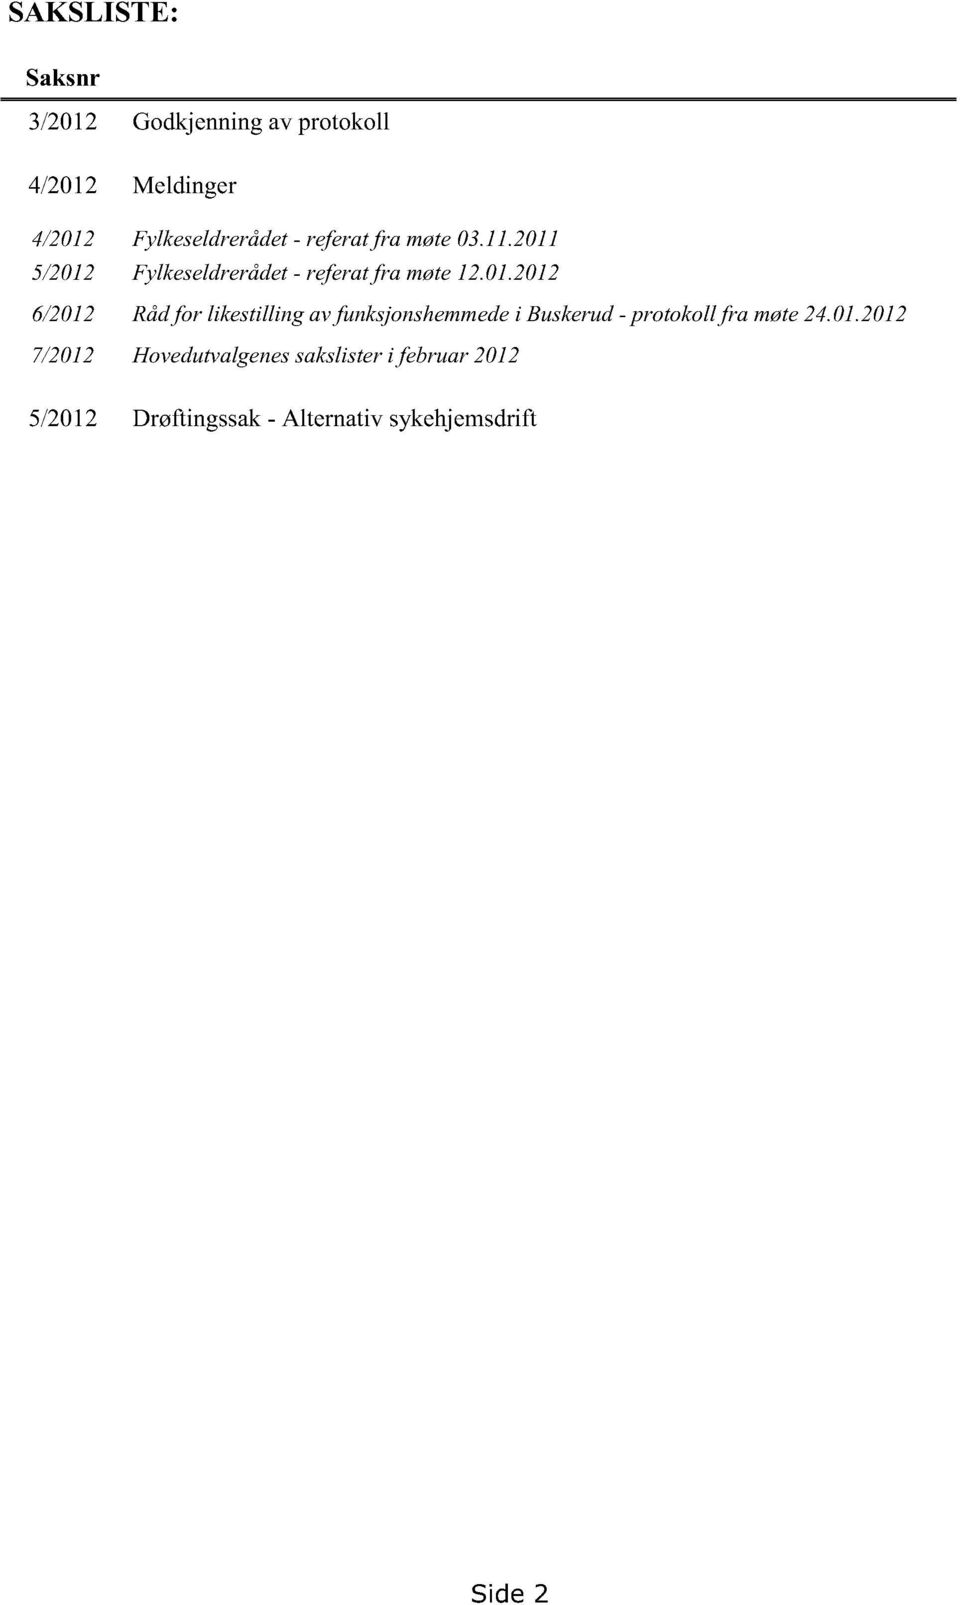 01.2012 6/2012 Rådfor likestilling av funksjonshemmede i Buskerud- protokoll fra møte24.